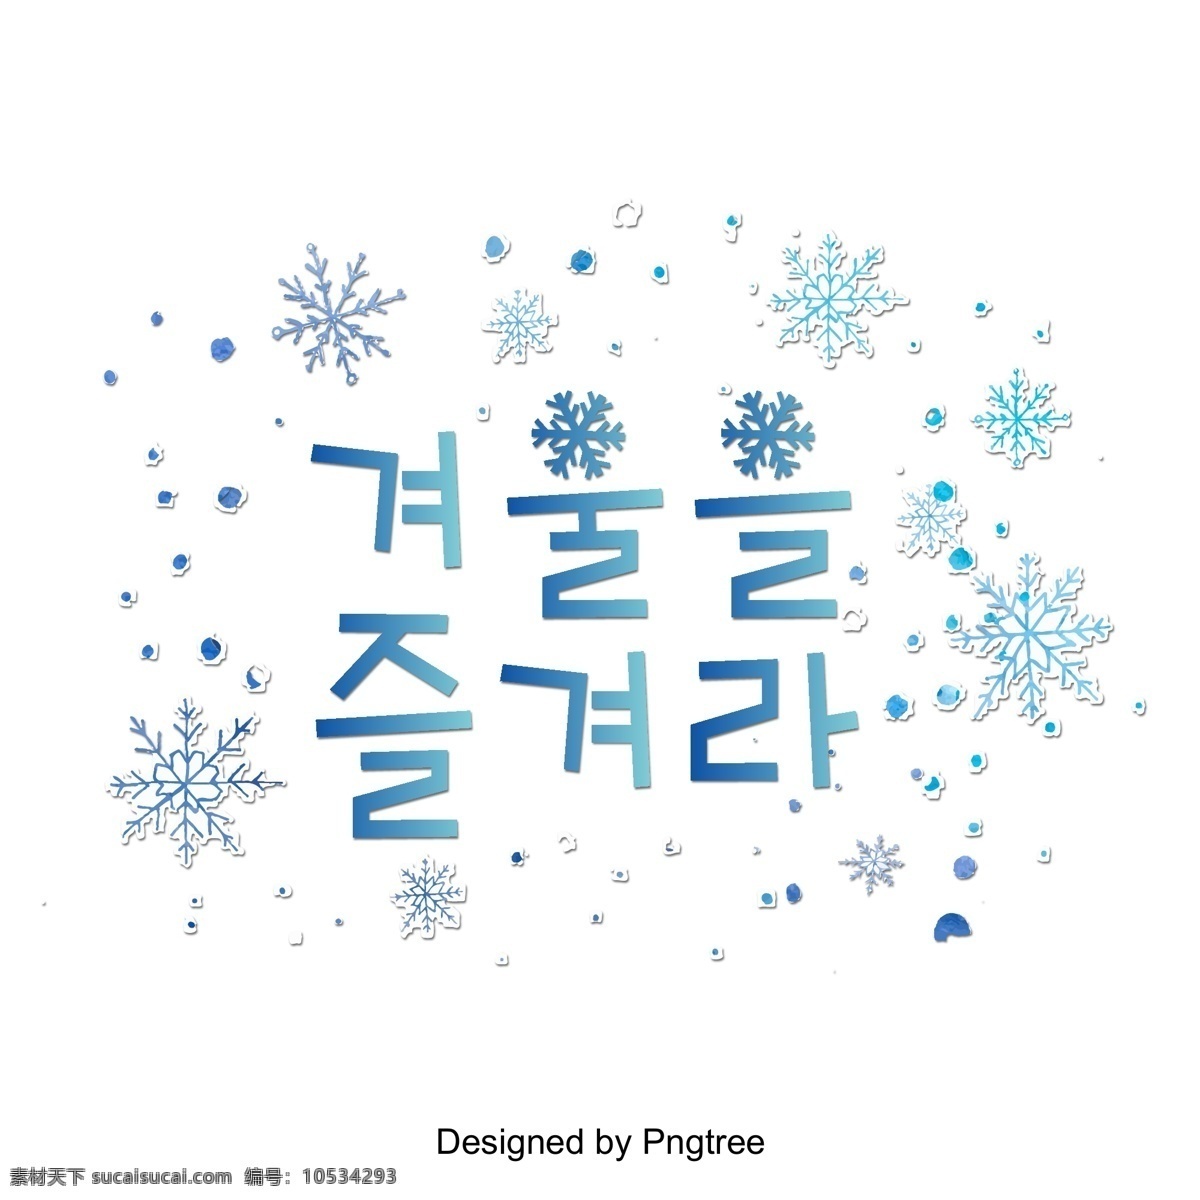 喜欢 冬天 雪 三维 投影 人物 逐渐 来到 现场 喜欢在冬天 这篇论文 雪花 进步 立体 韩文 这是给你的 冬季 季节